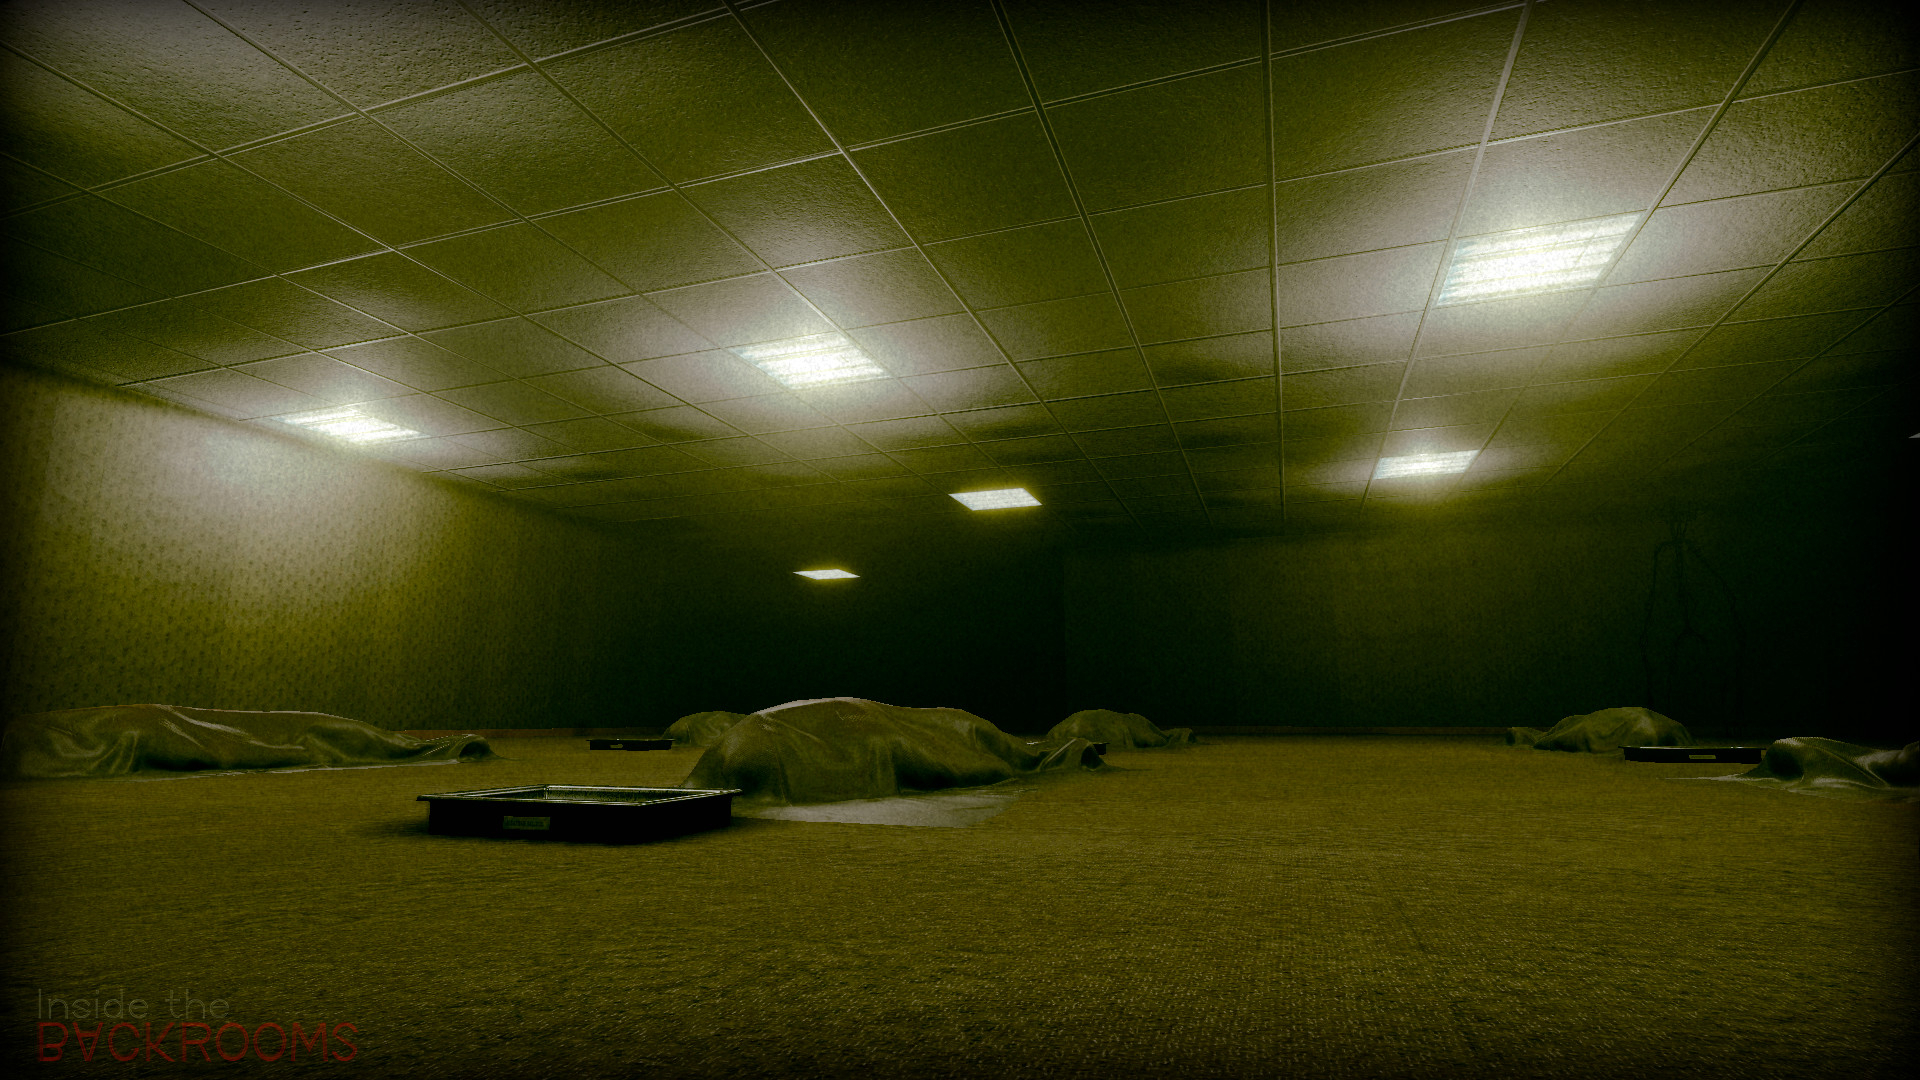 Скриншот из игры Inside the Backrooms под номером 10